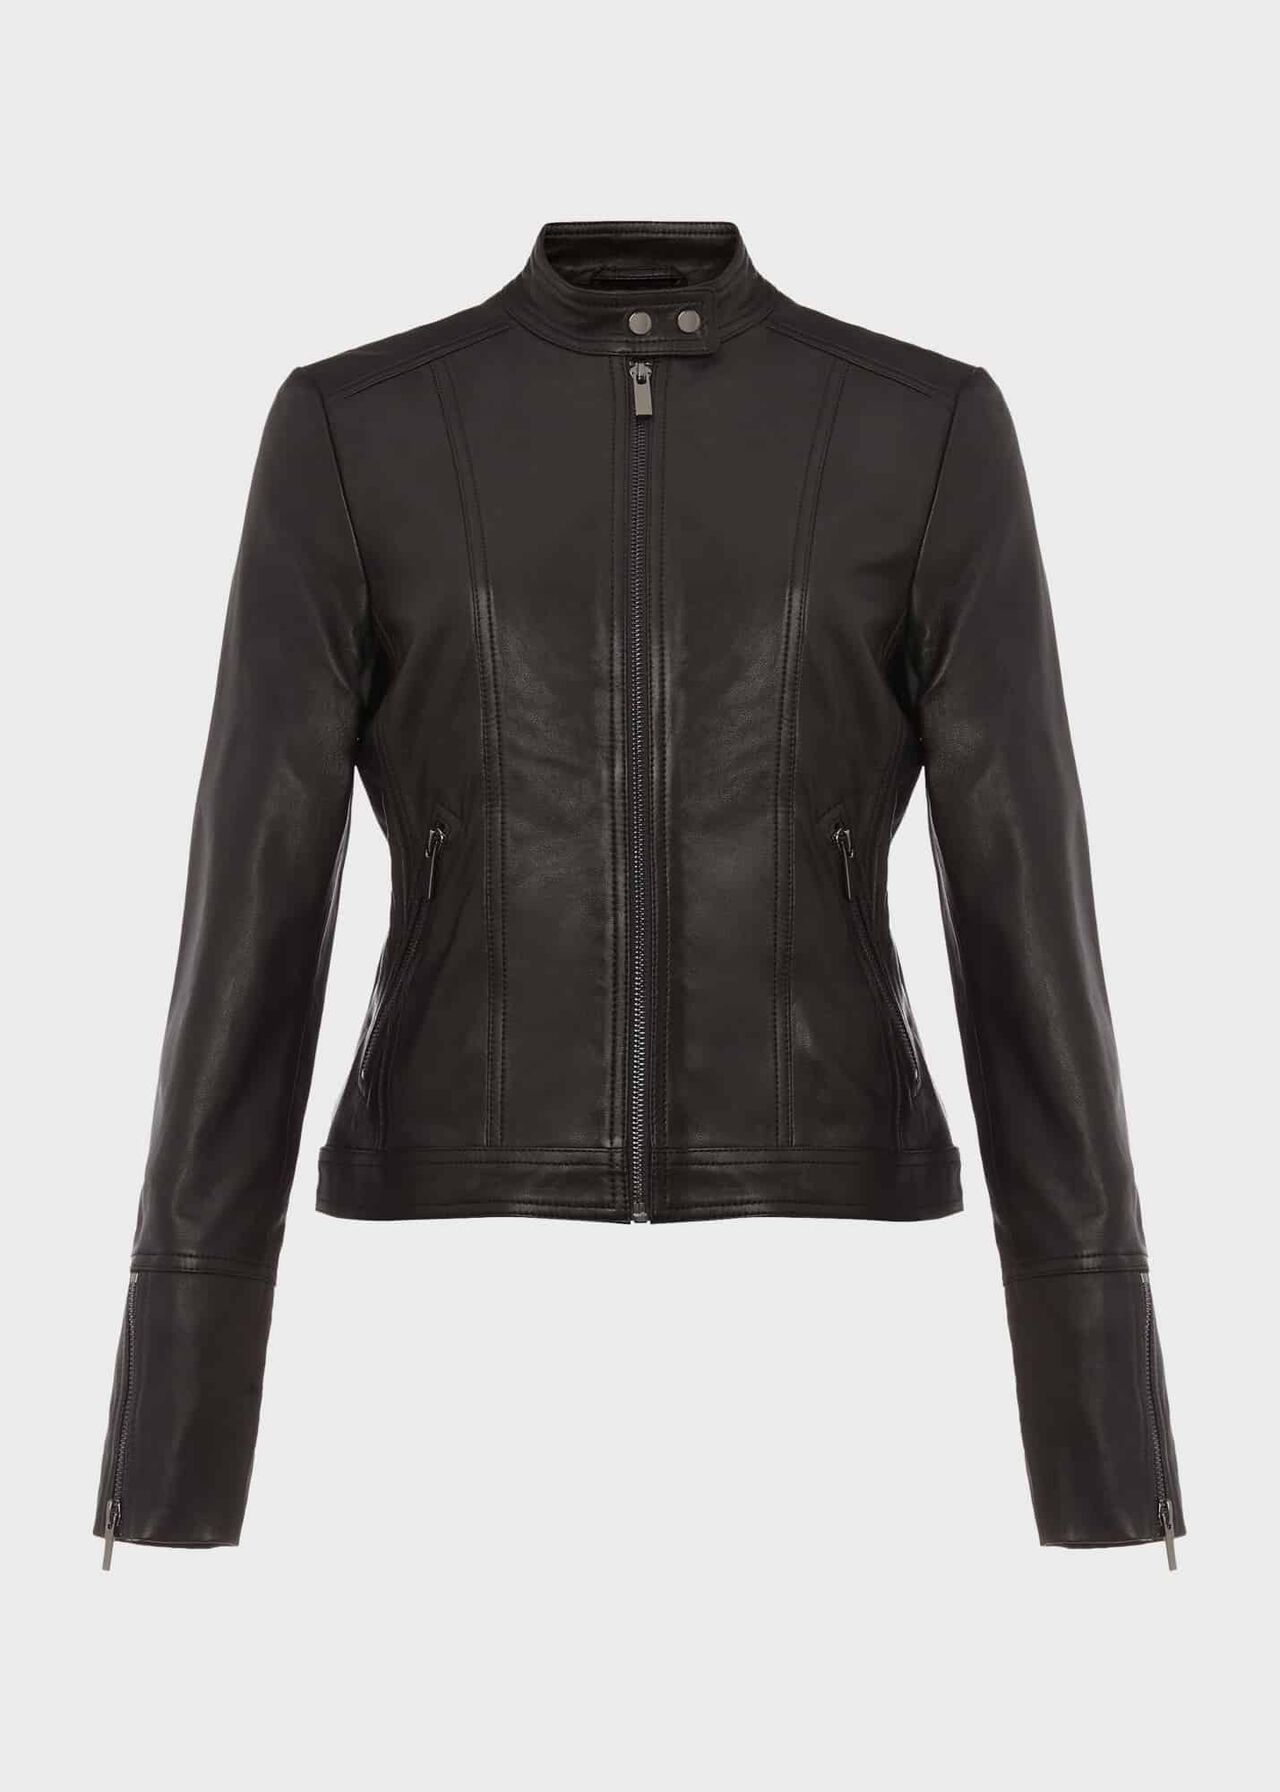 Fran Leather Jacket, Black, hi-res